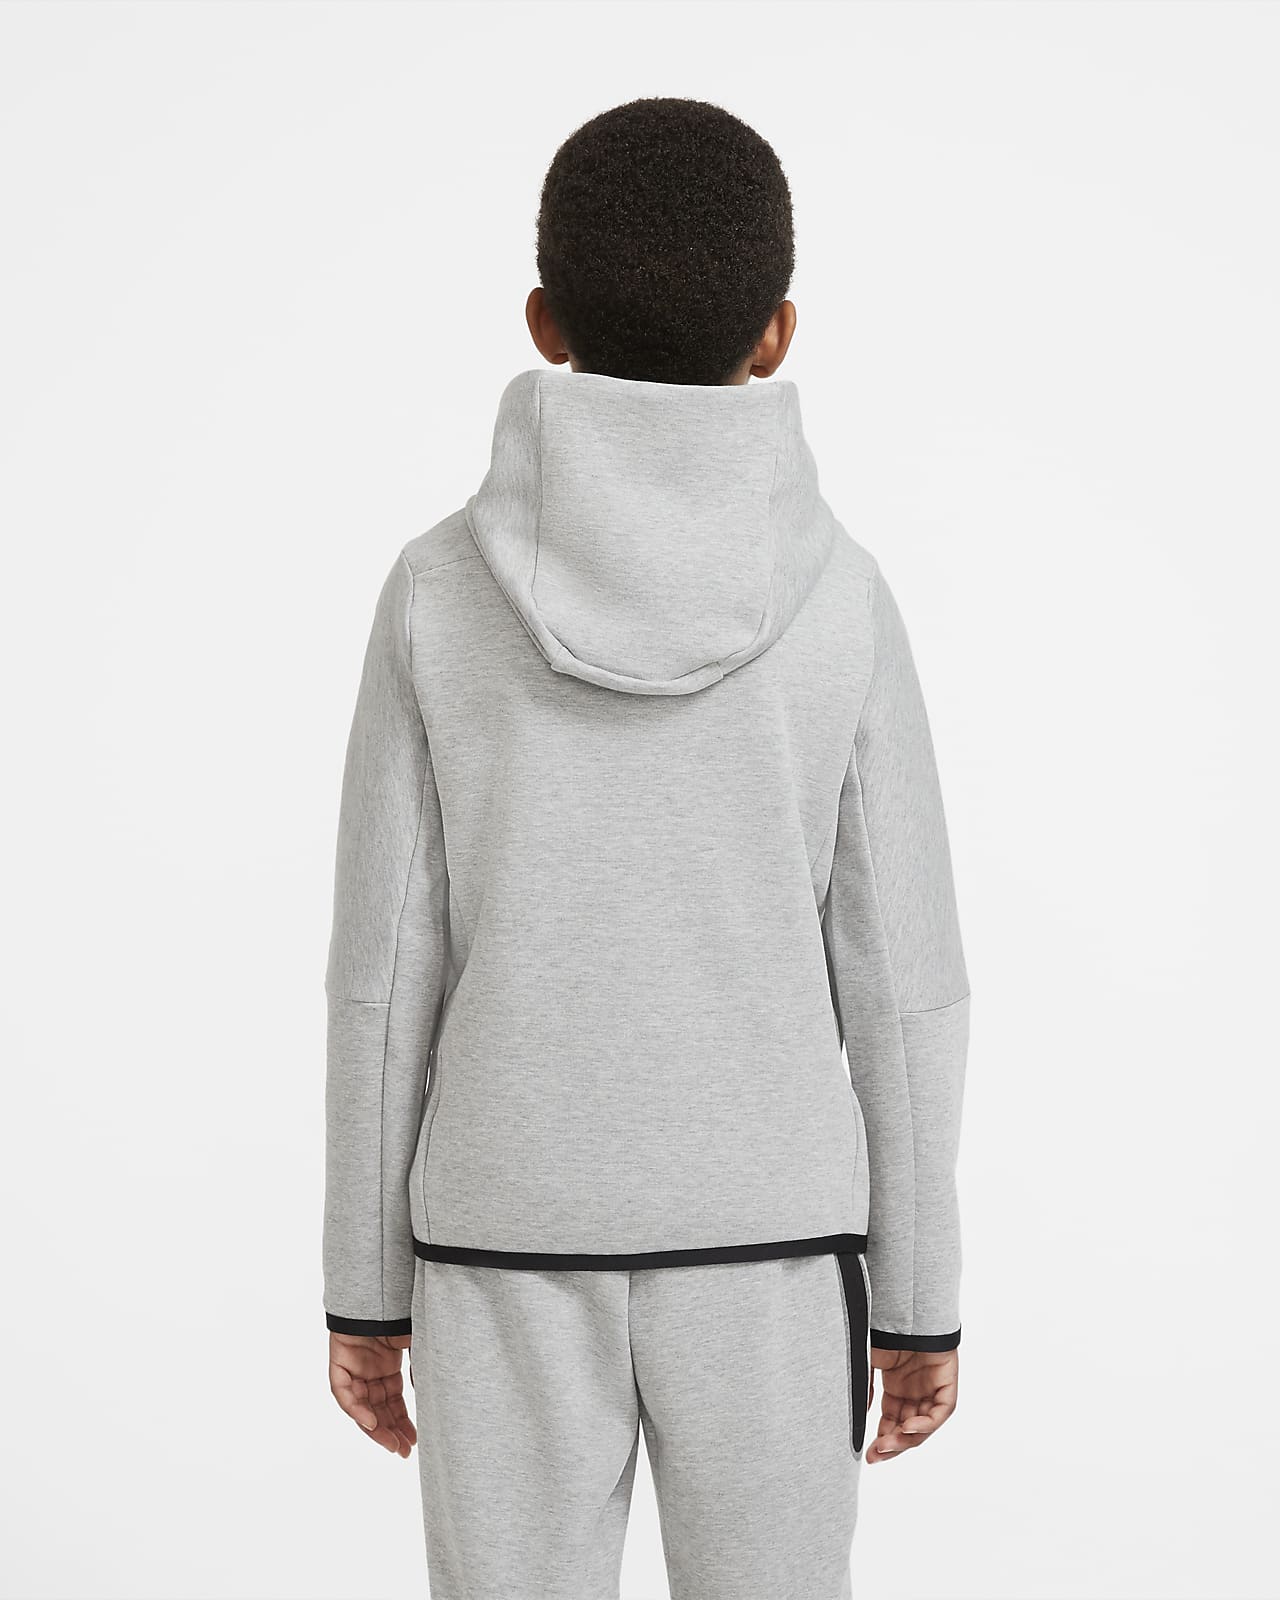 nike youth zip hoodie